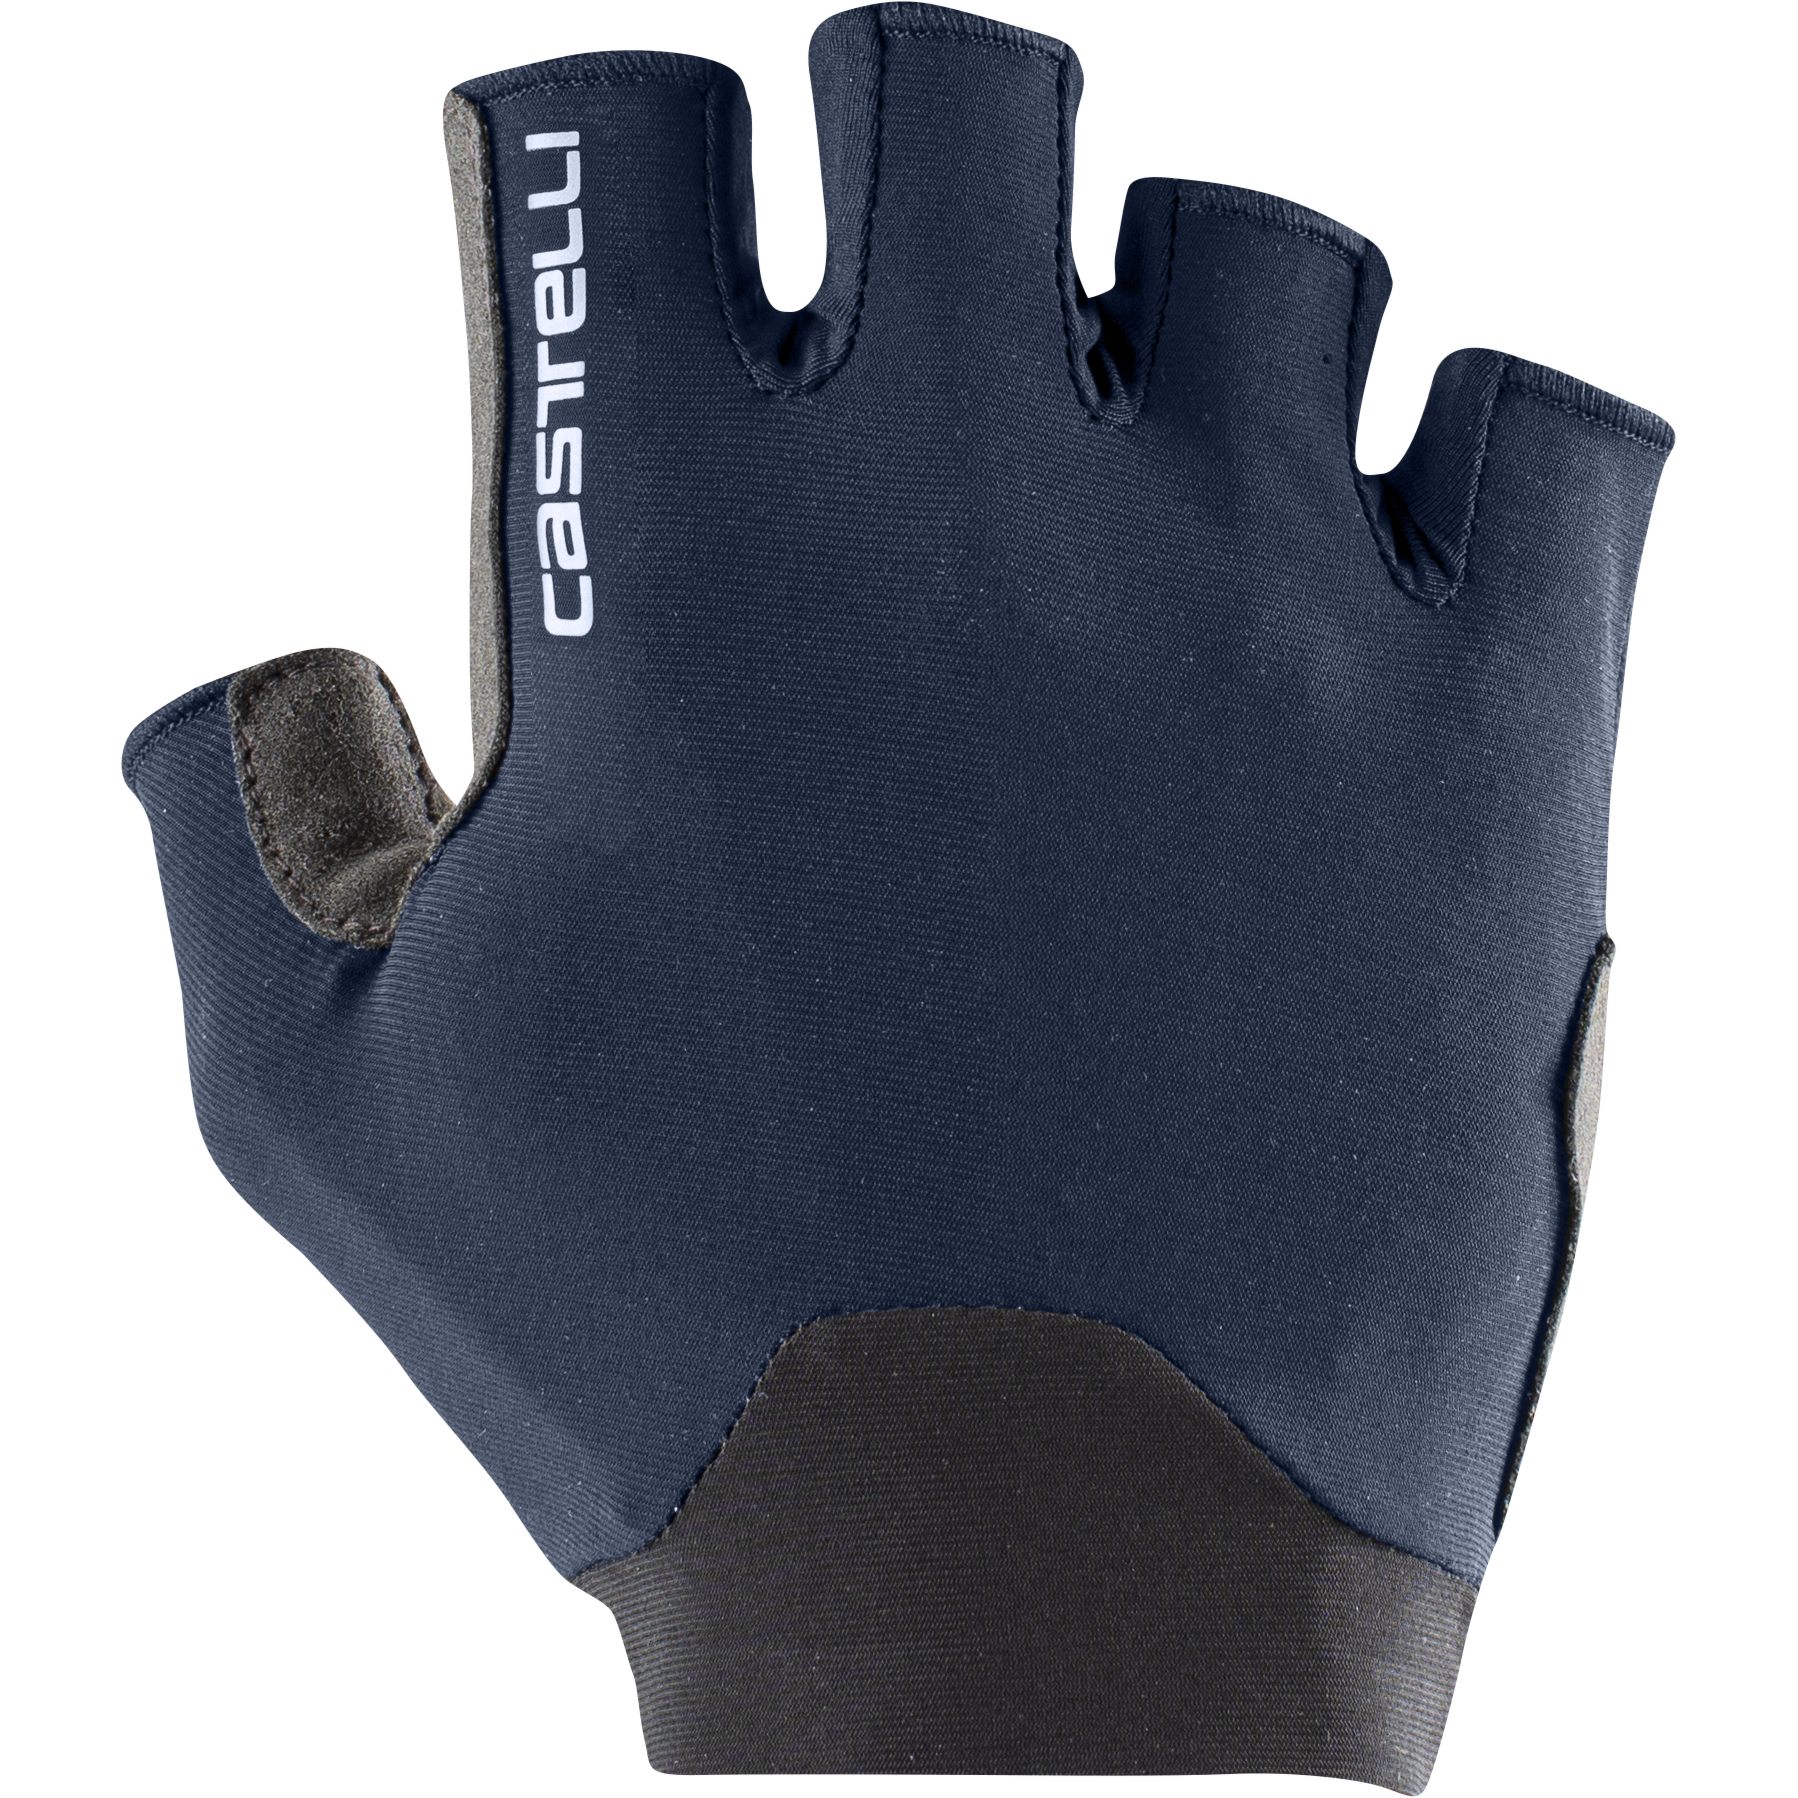 Produktbild von Castelli Endurance Handschuhe - belgian blue 424